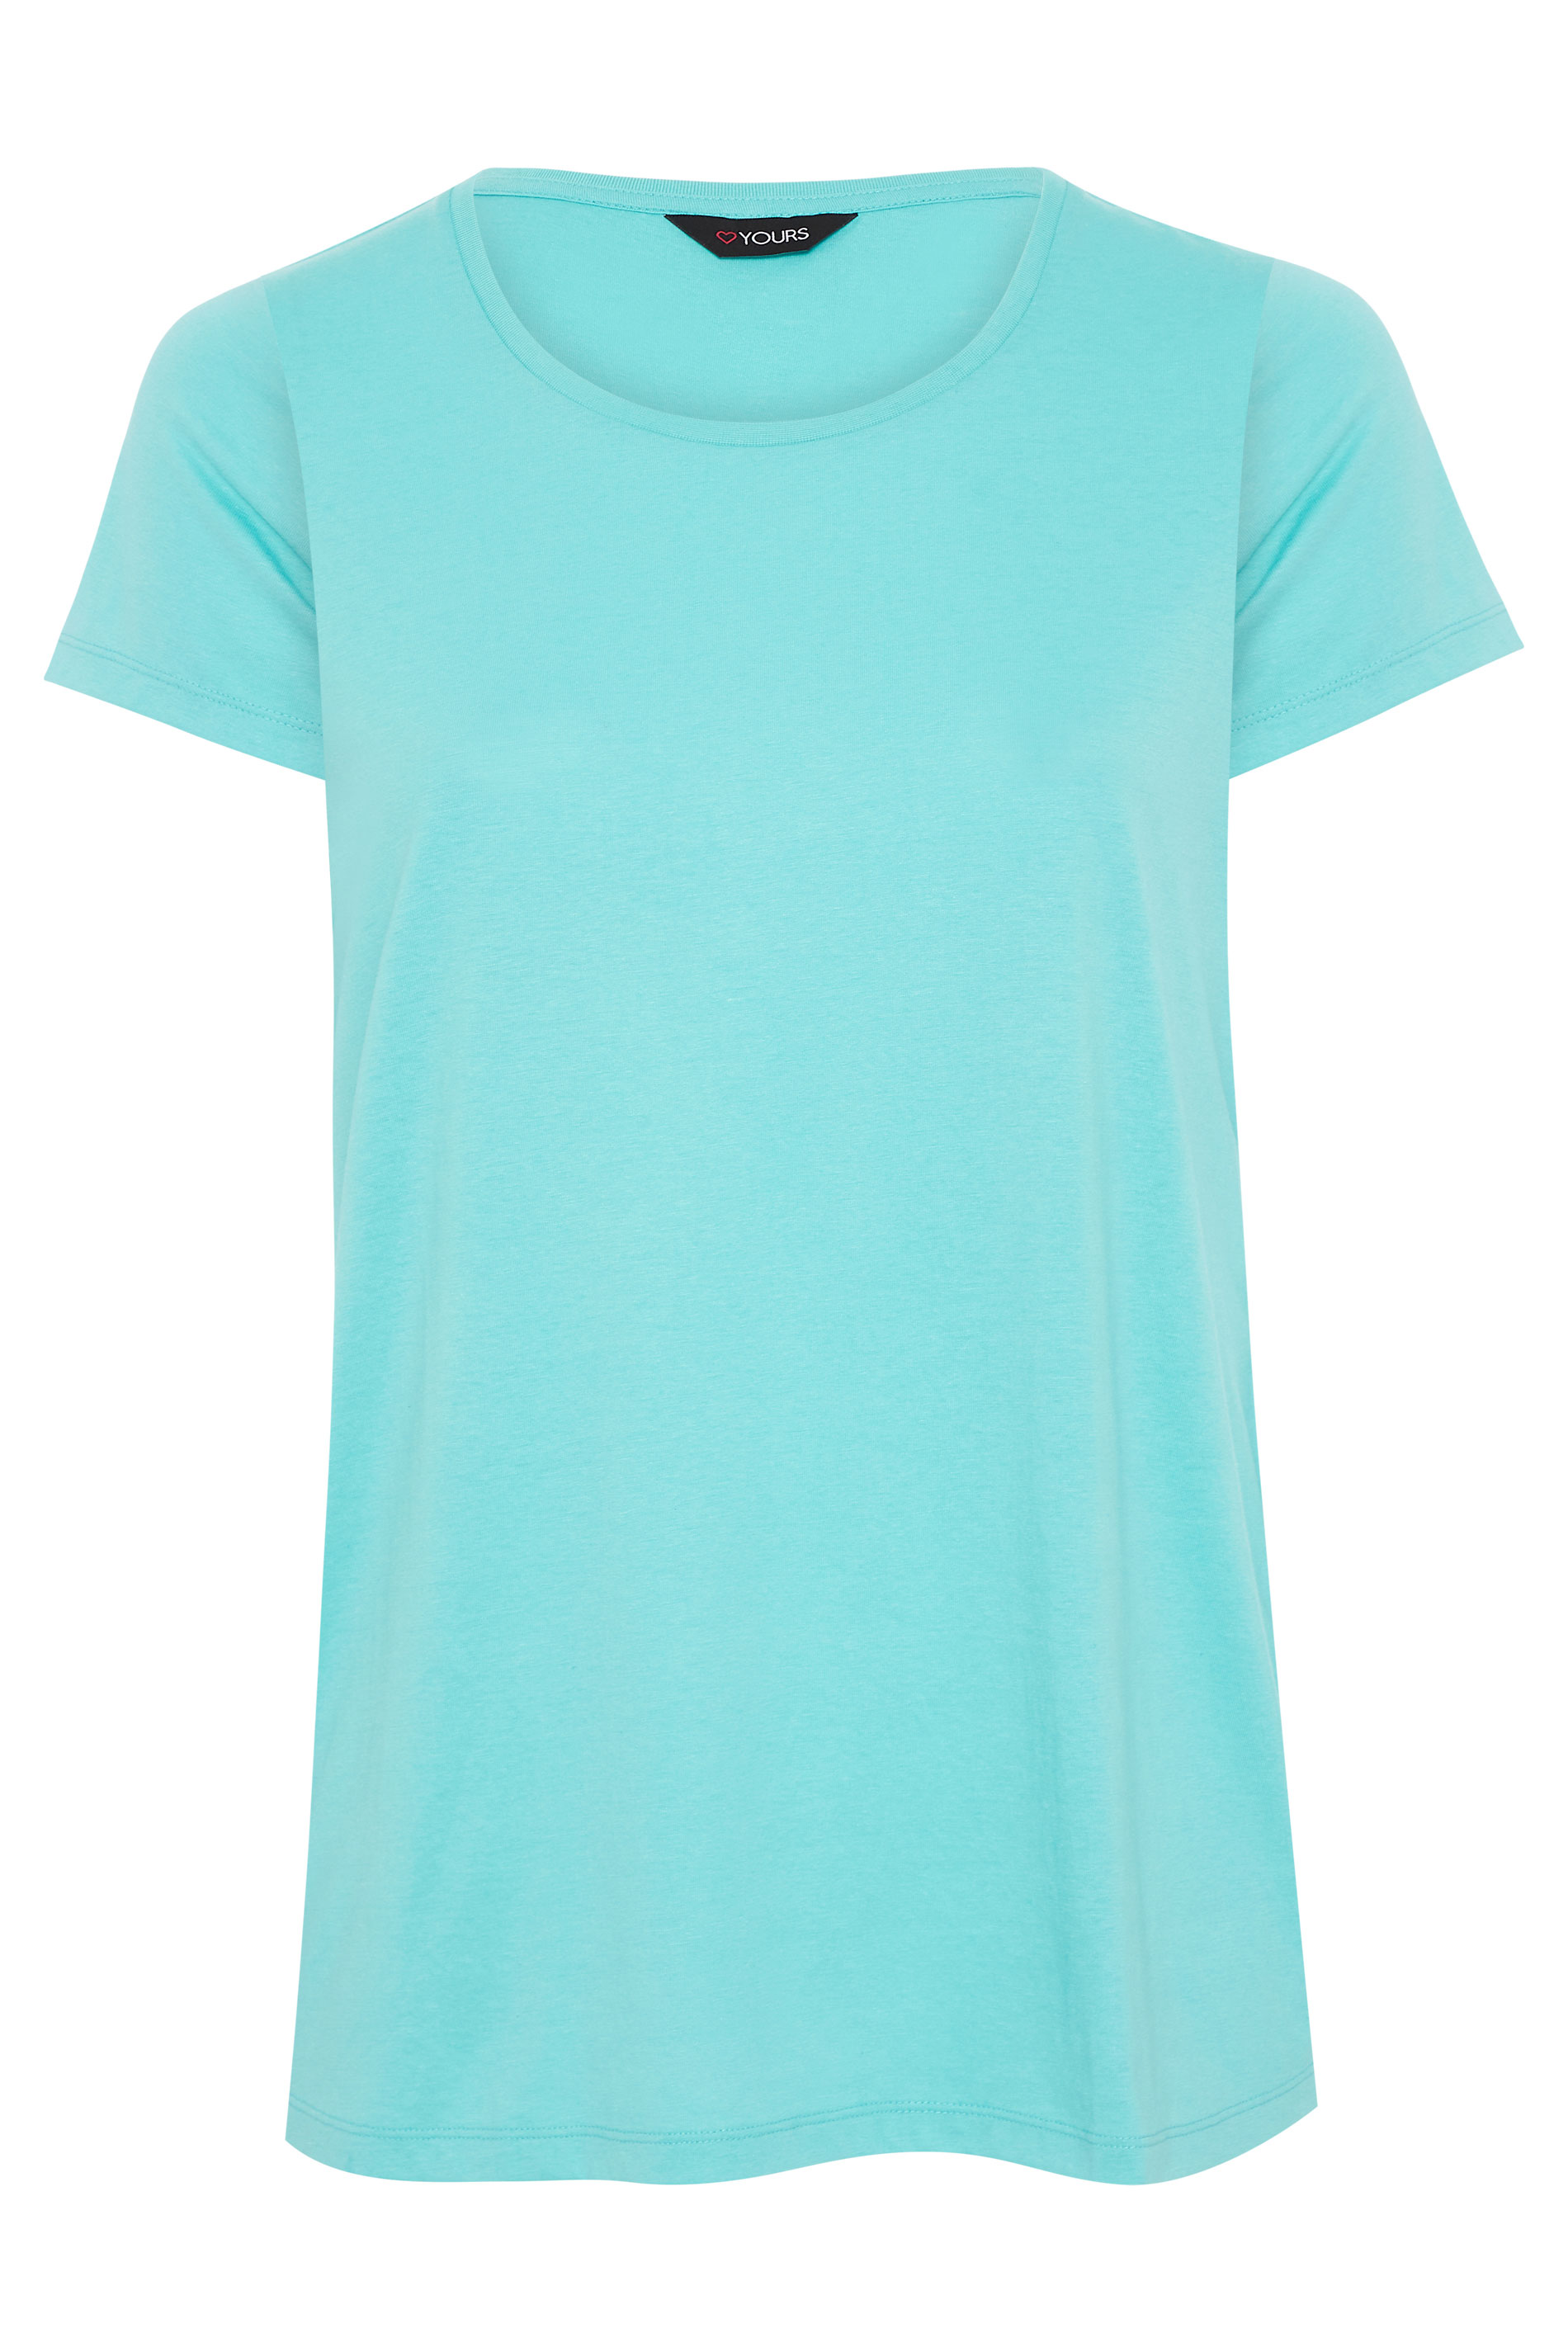 Turquoise Blue Basic T-Shirt | Yours Clothing